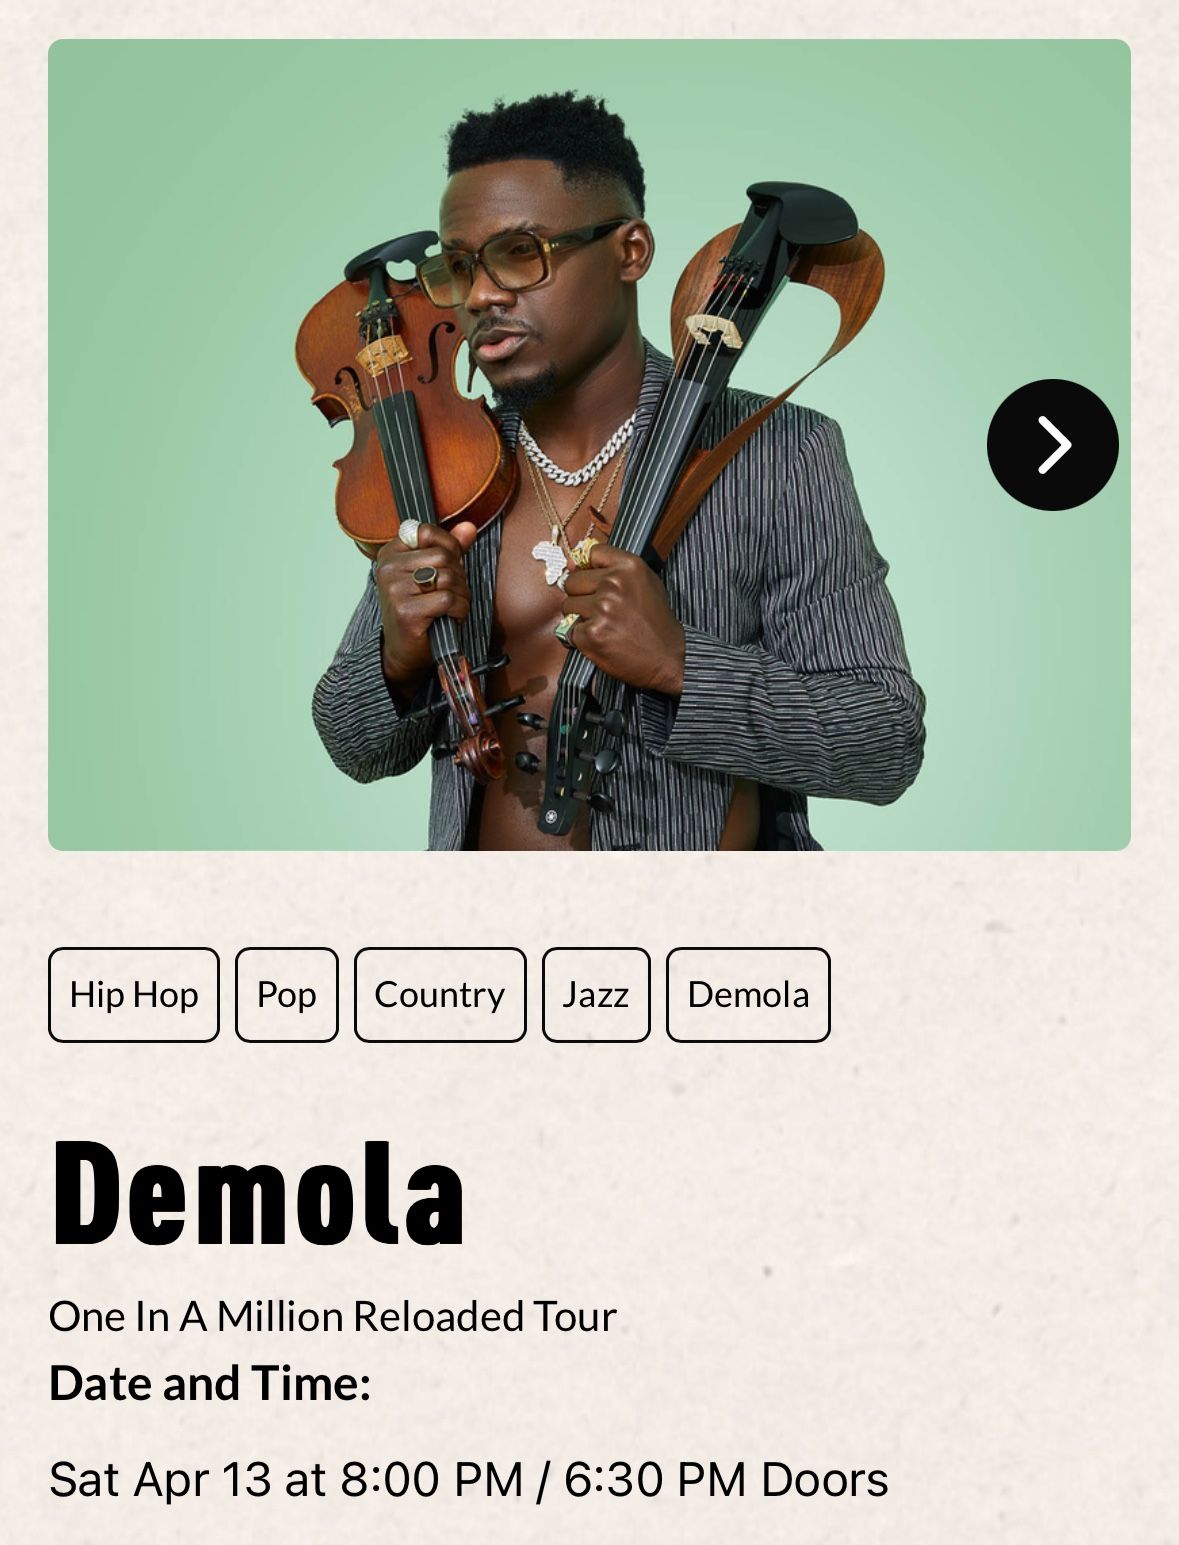 4x Tickets For Demola Concert In Atlanta, GA